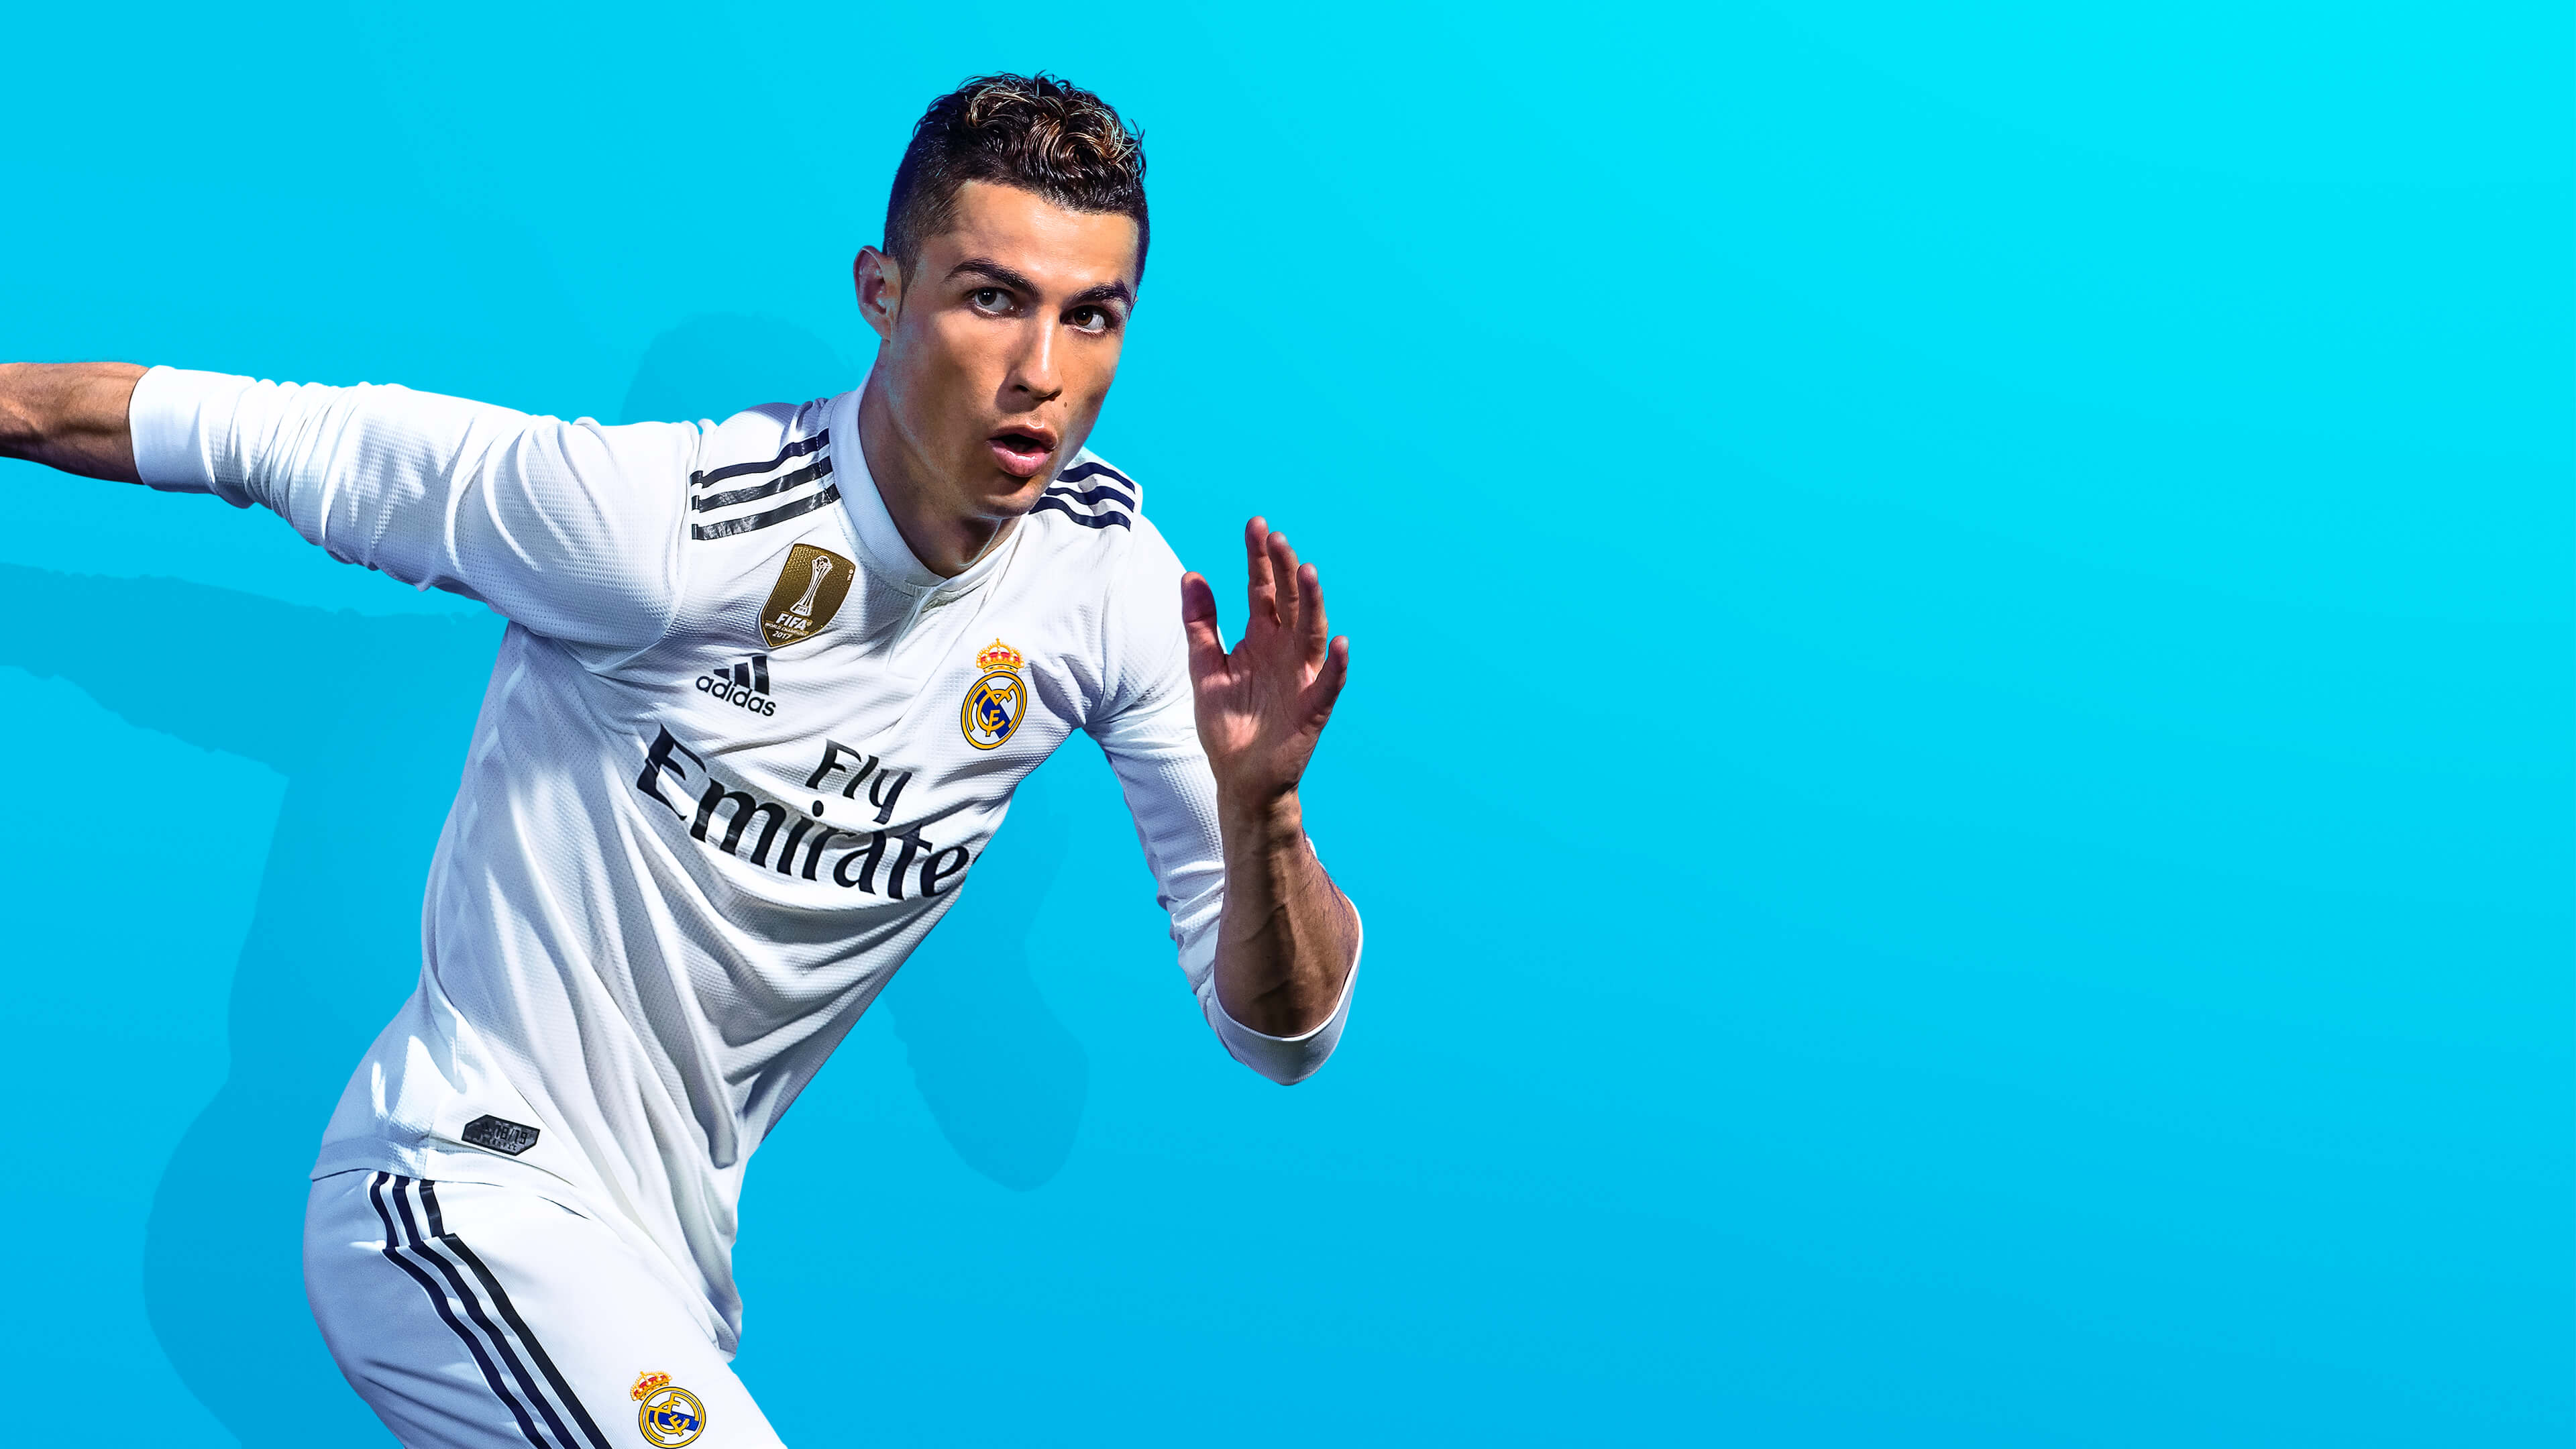 Cristiano Ronaldo in FIFA 19 4K